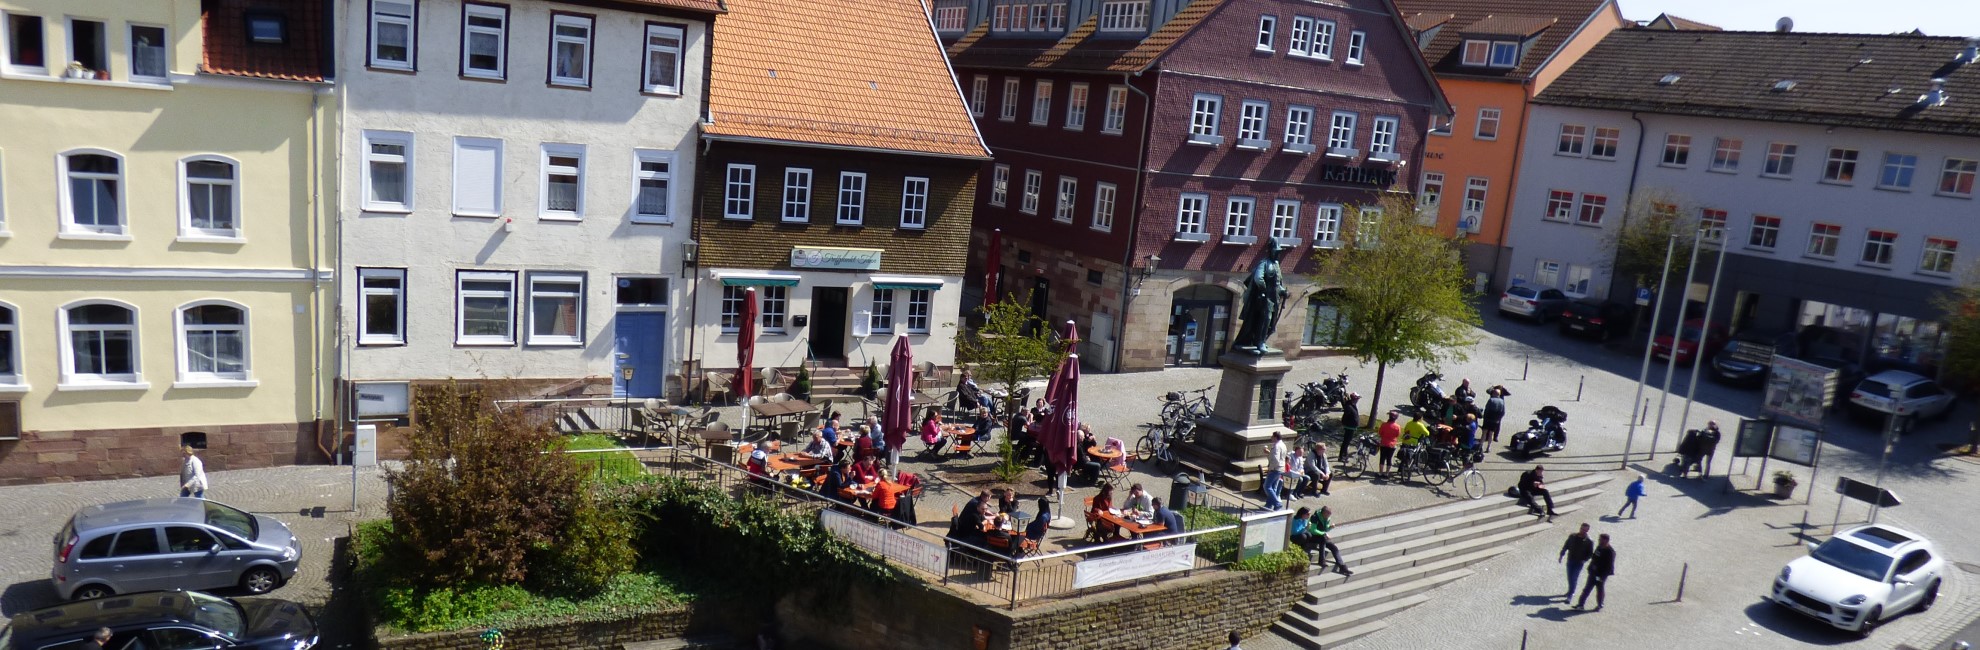 Tann - Marktplatz mit Gastronomie und Denkmal, Blick vom Naturmuseum - Panoramaansicht